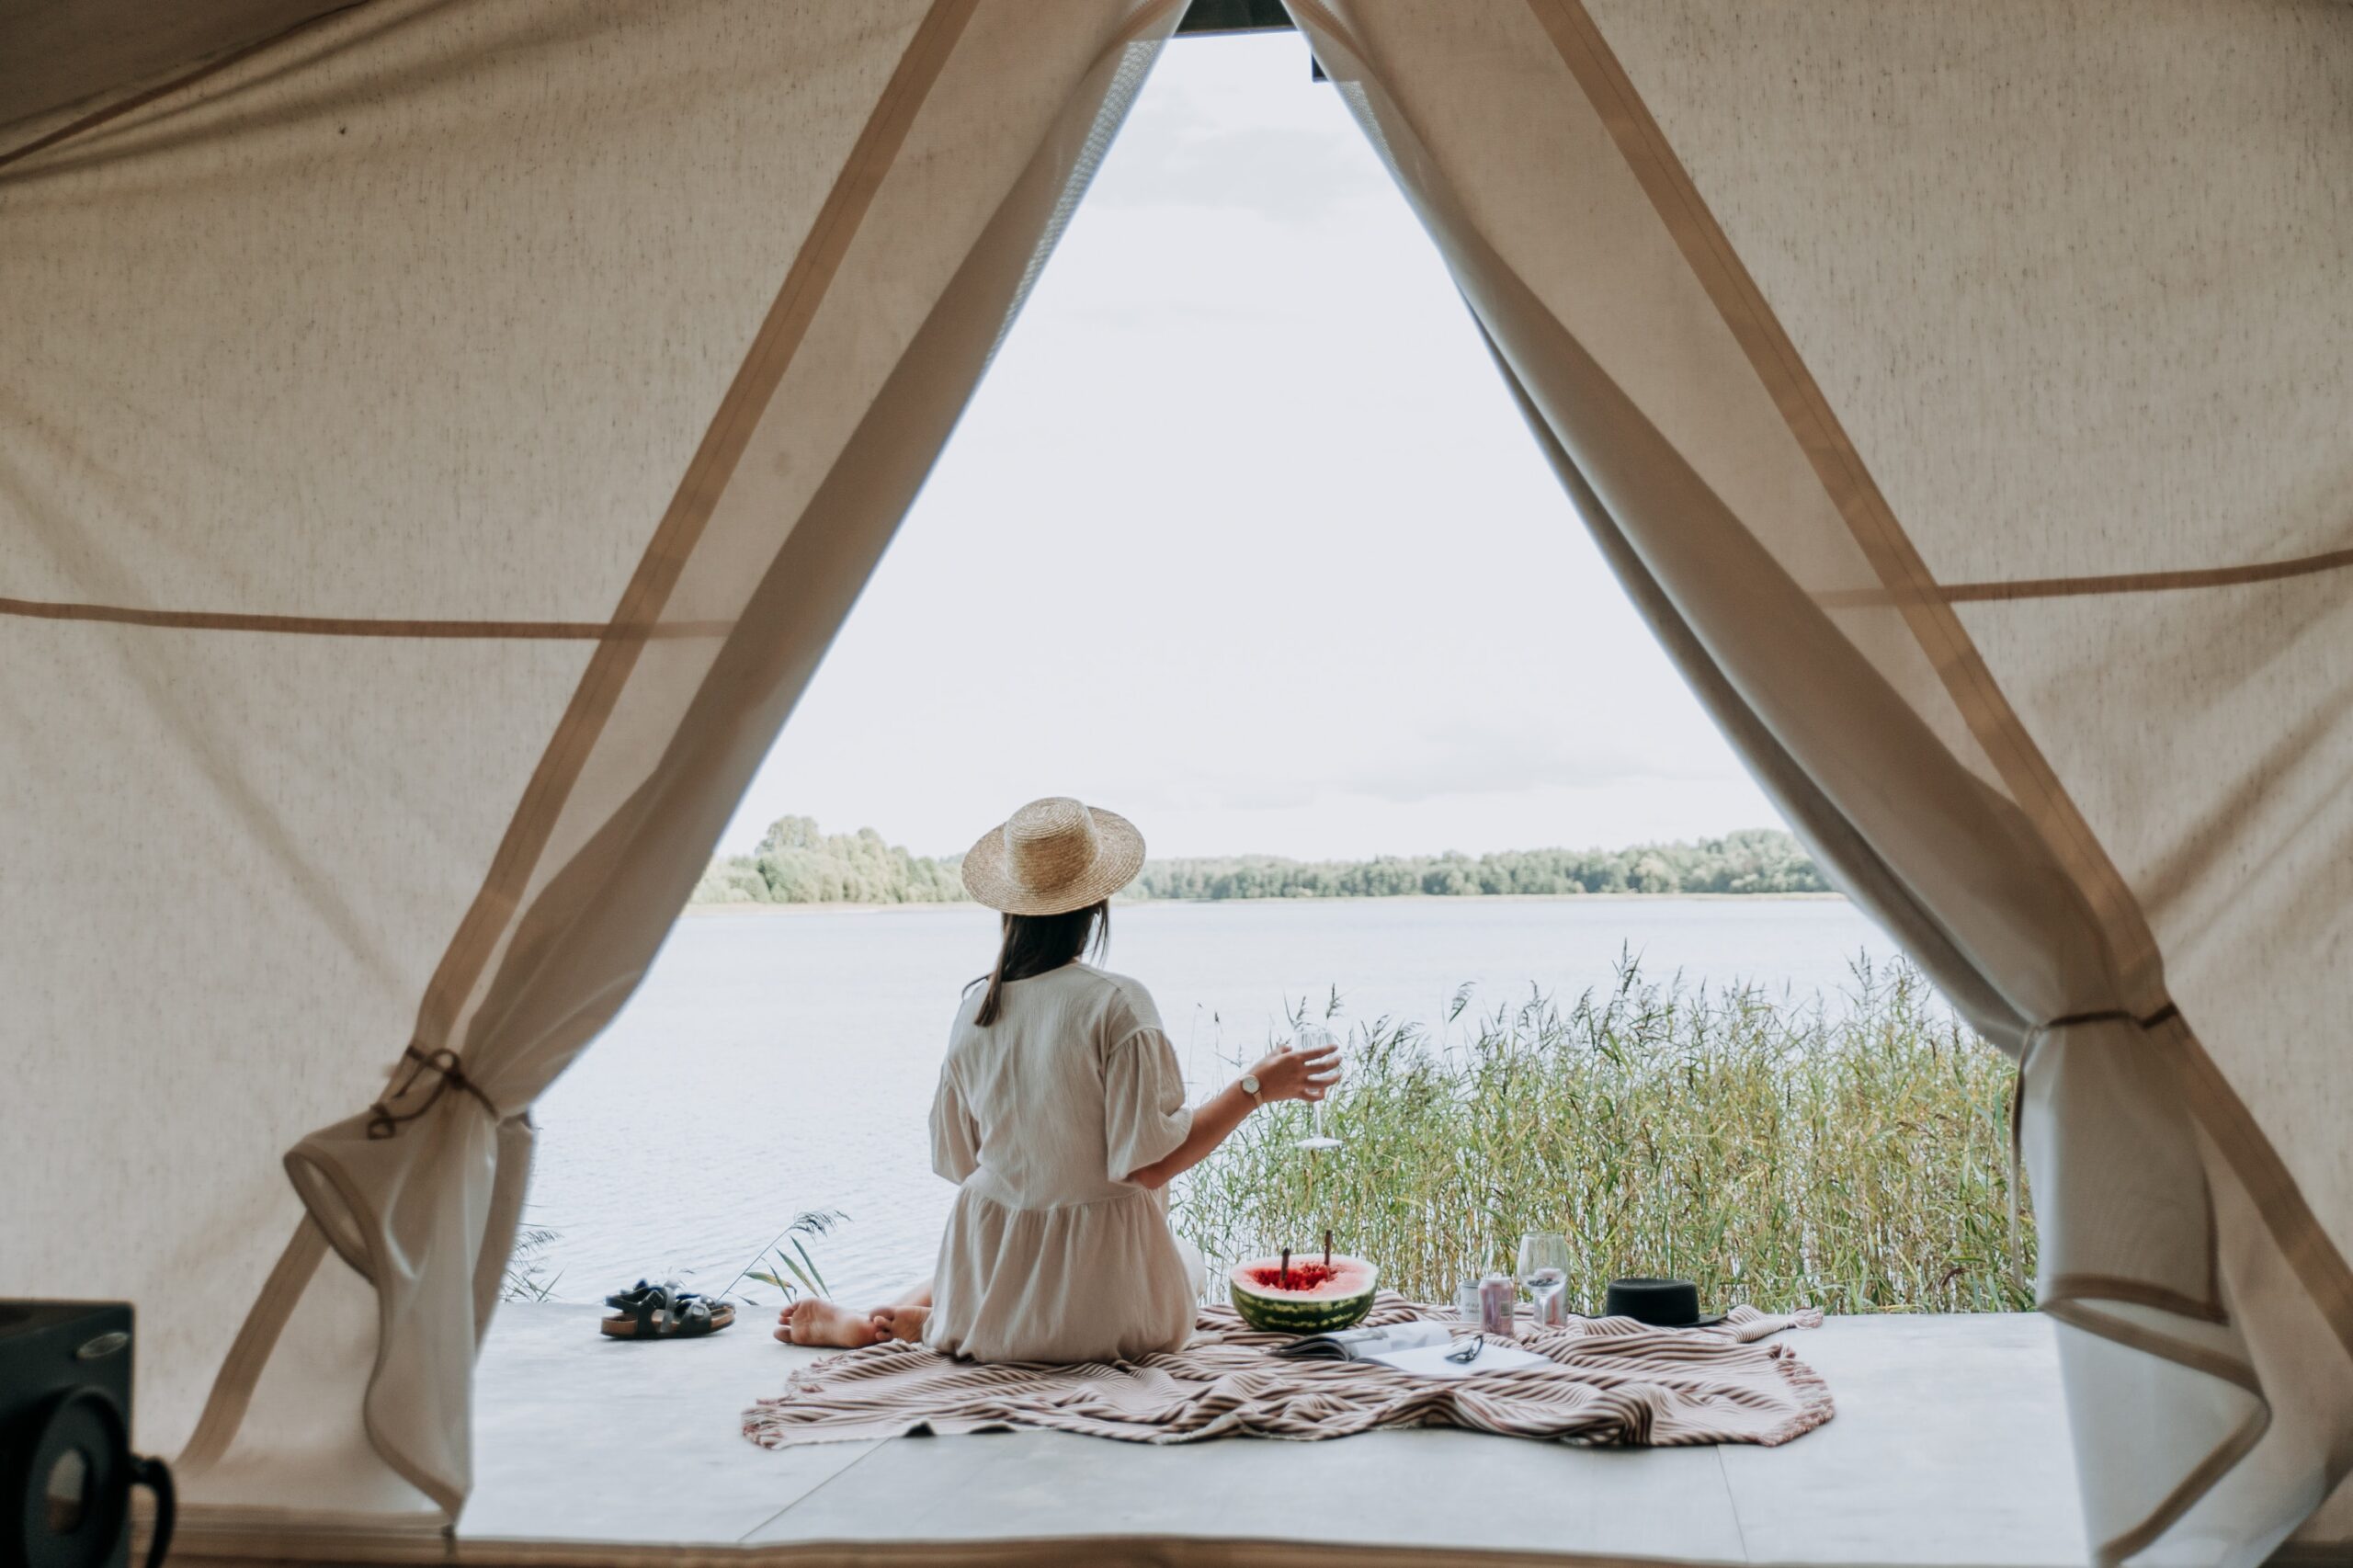 Một hoạt động đơn giản như cắm trại có thể giúp ích cho cơ thể bình thường hóa giấc ngủ chu kỳ và cải thiện sức khỏe. (Nguồn: Internet)